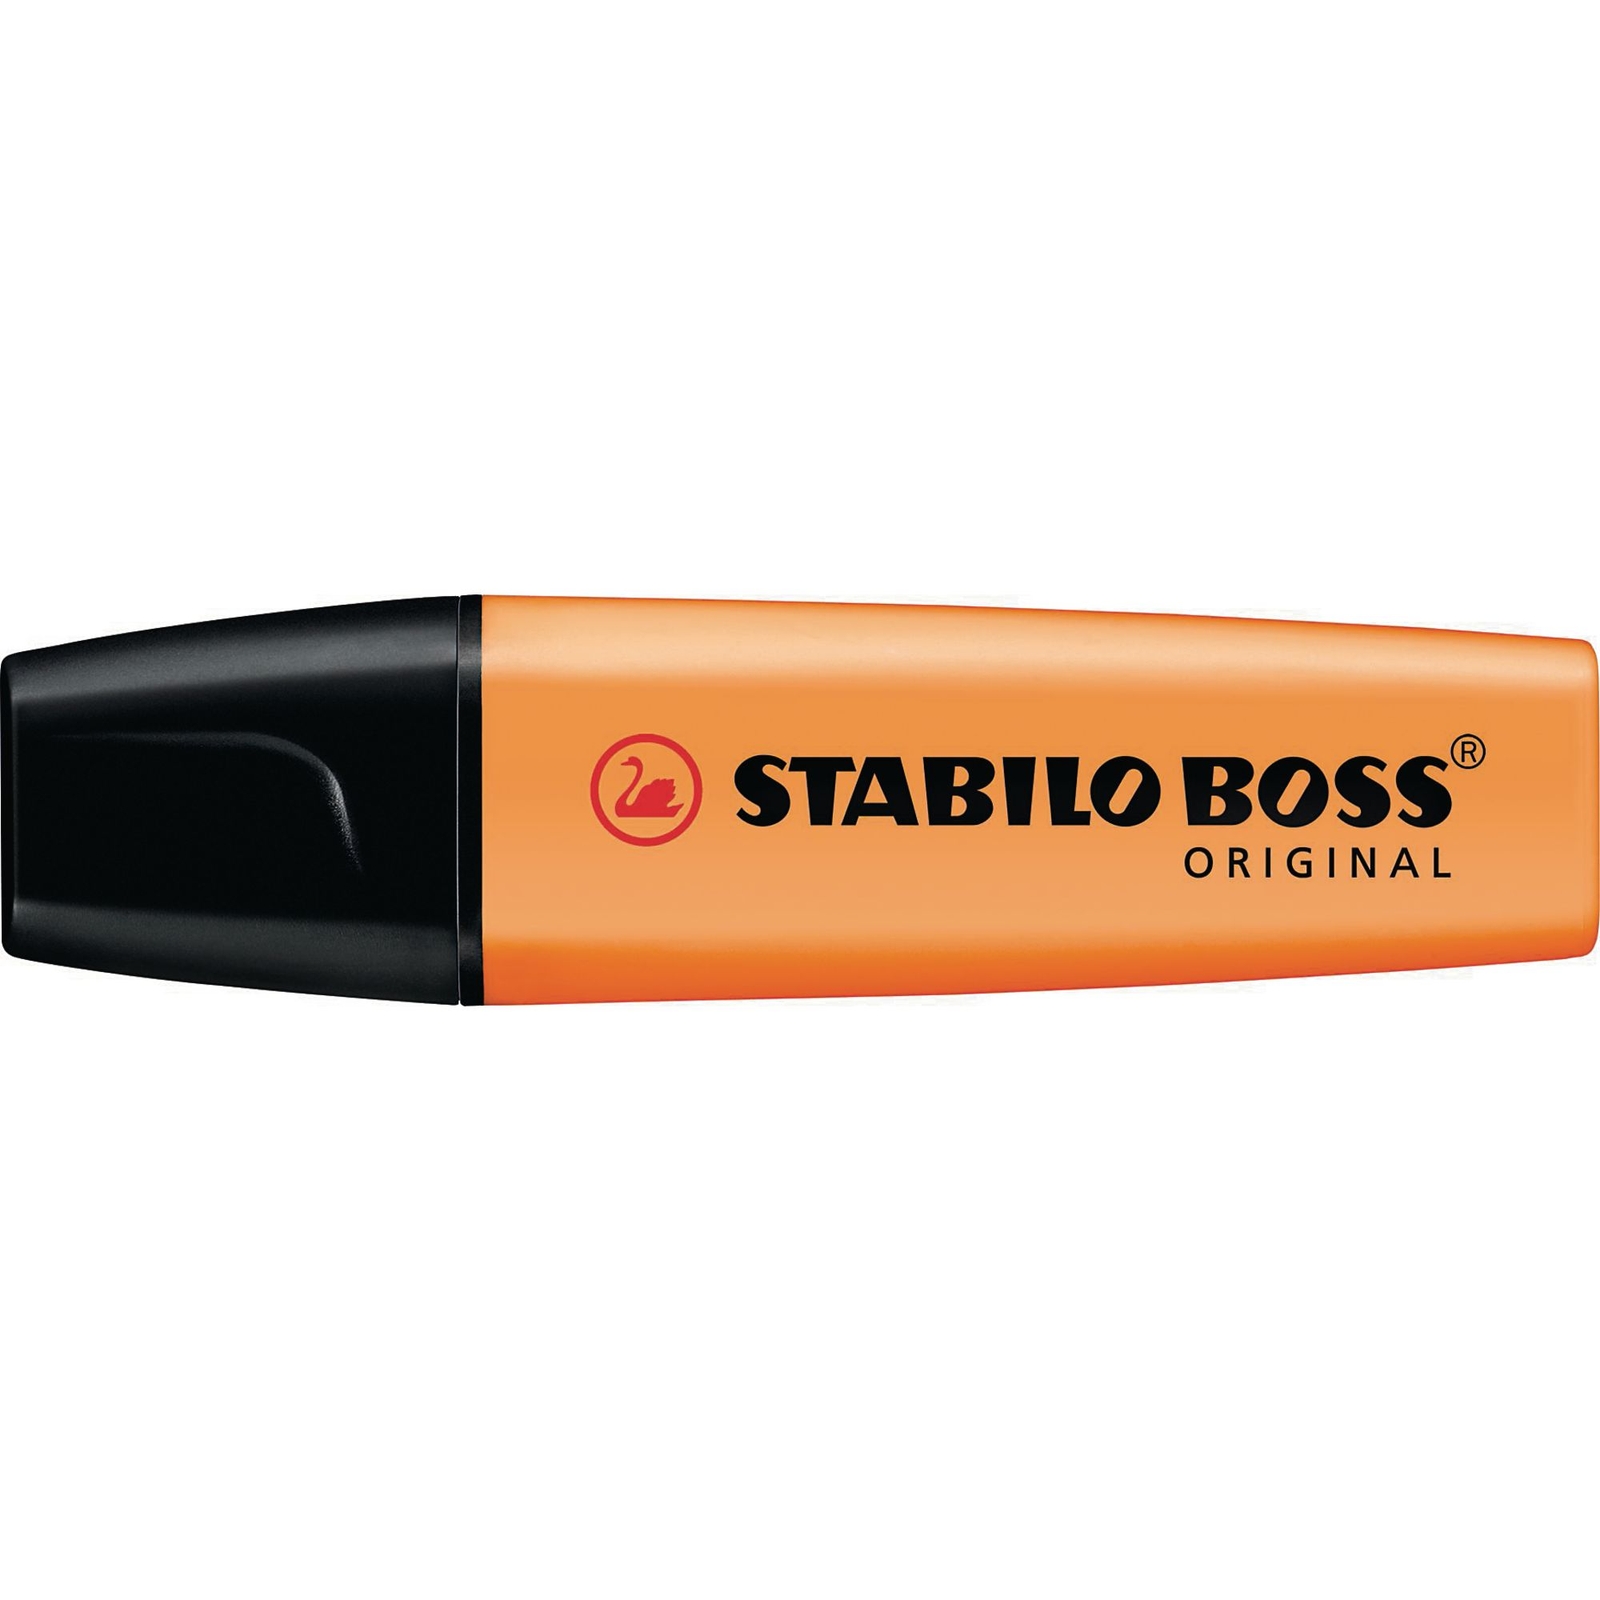 Stabilo Boss Original Highlighter Orange - Pack of 10